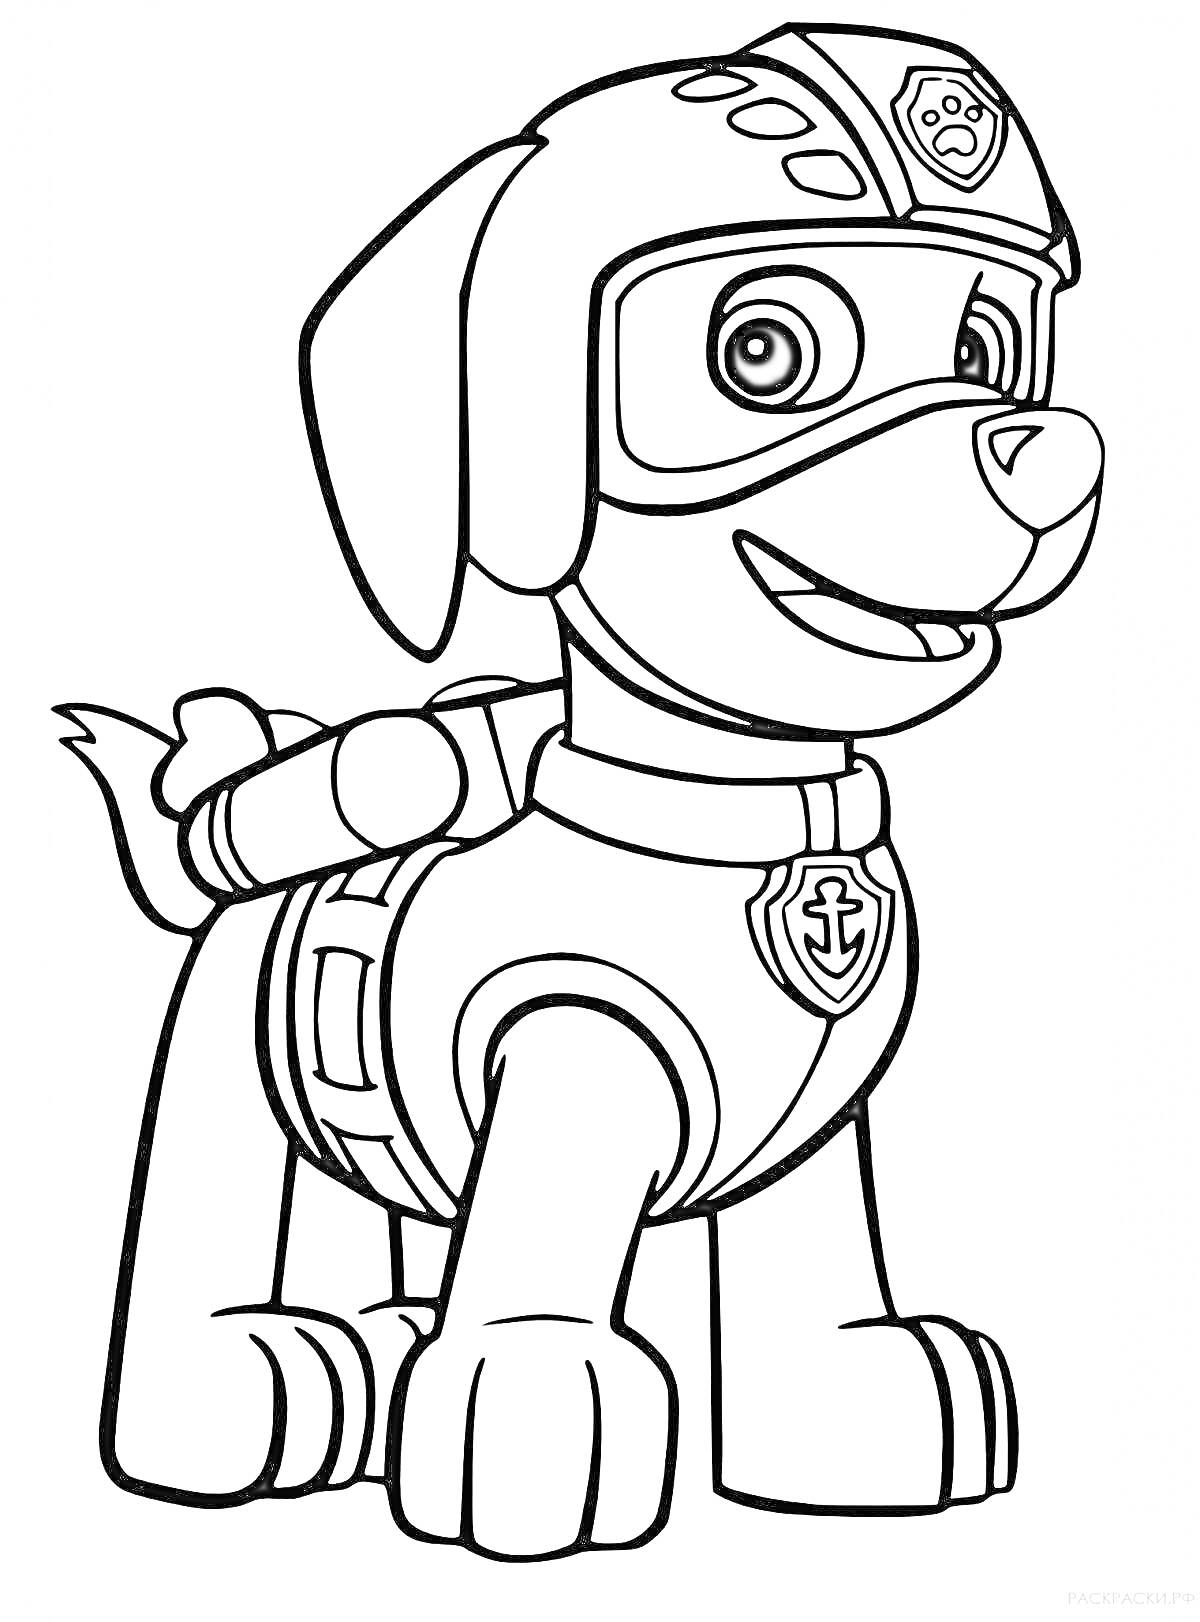 Раскраска Щенок в костюме спасателя с очками и рюкзаком из мультфильма 